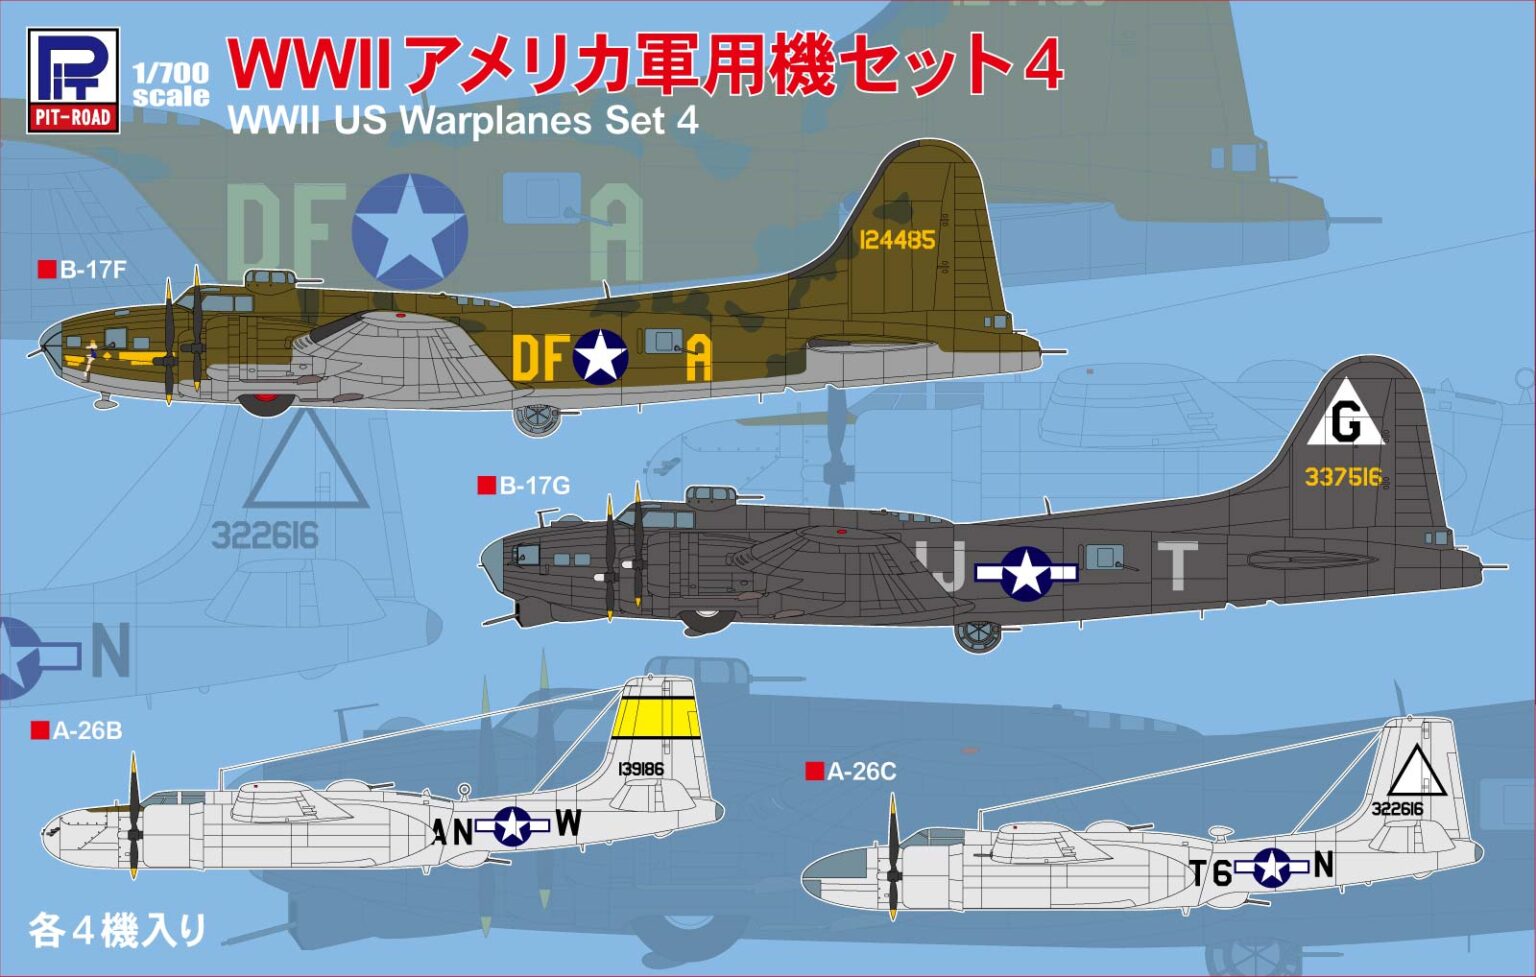 1/700 WWIIアメリカ軍用機セット4 - ウインドウを閉じる